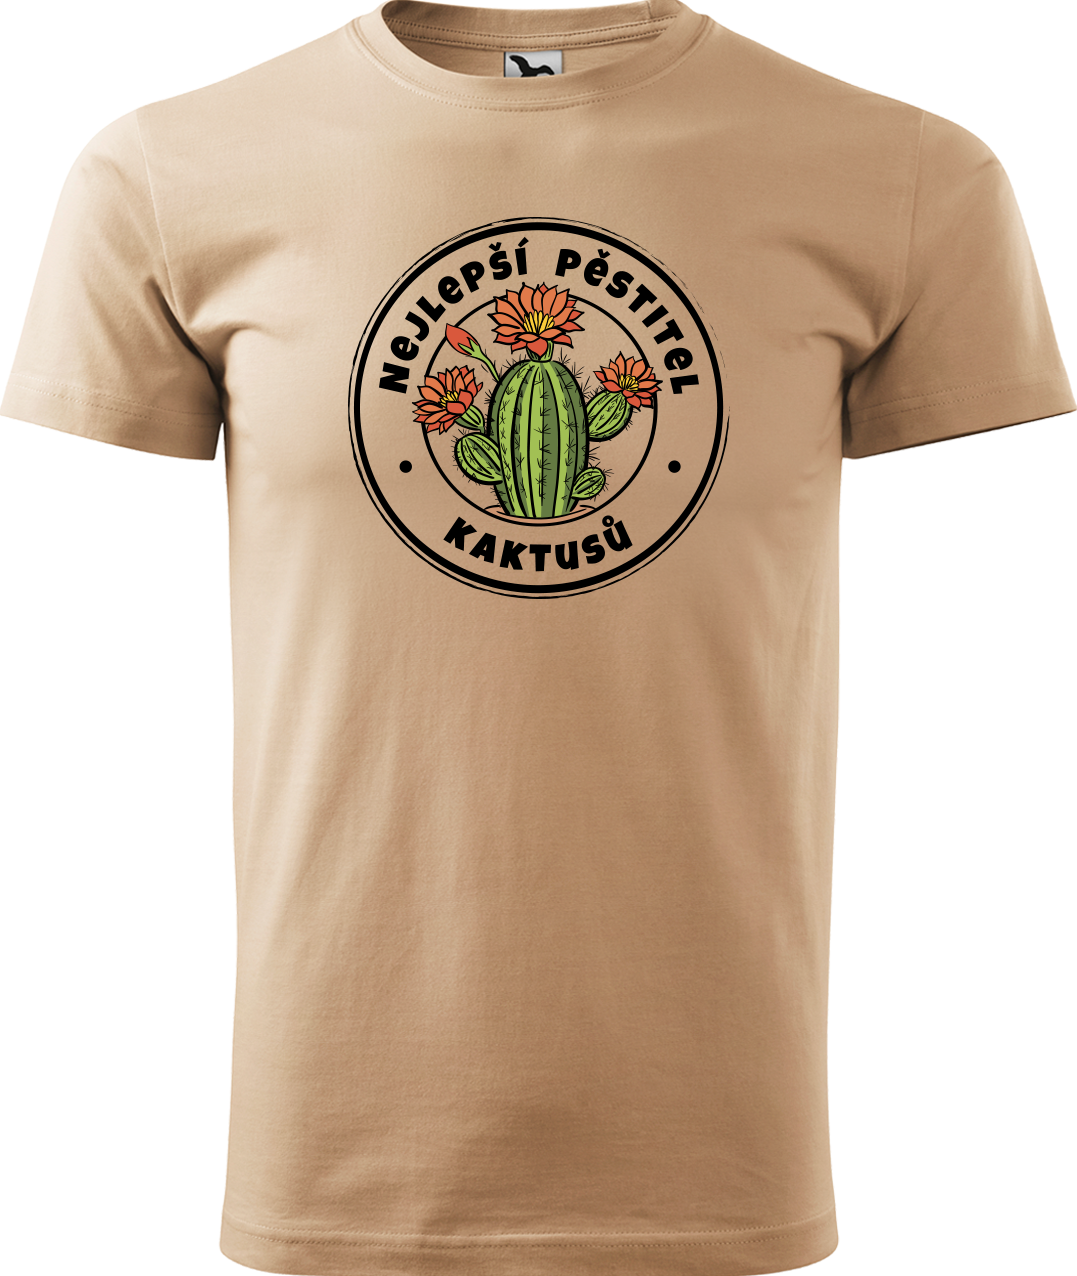 Tričko s kaktusem - Nejlepší pěstitel kaktusů Velikost: XL, Barva: Písková (08)